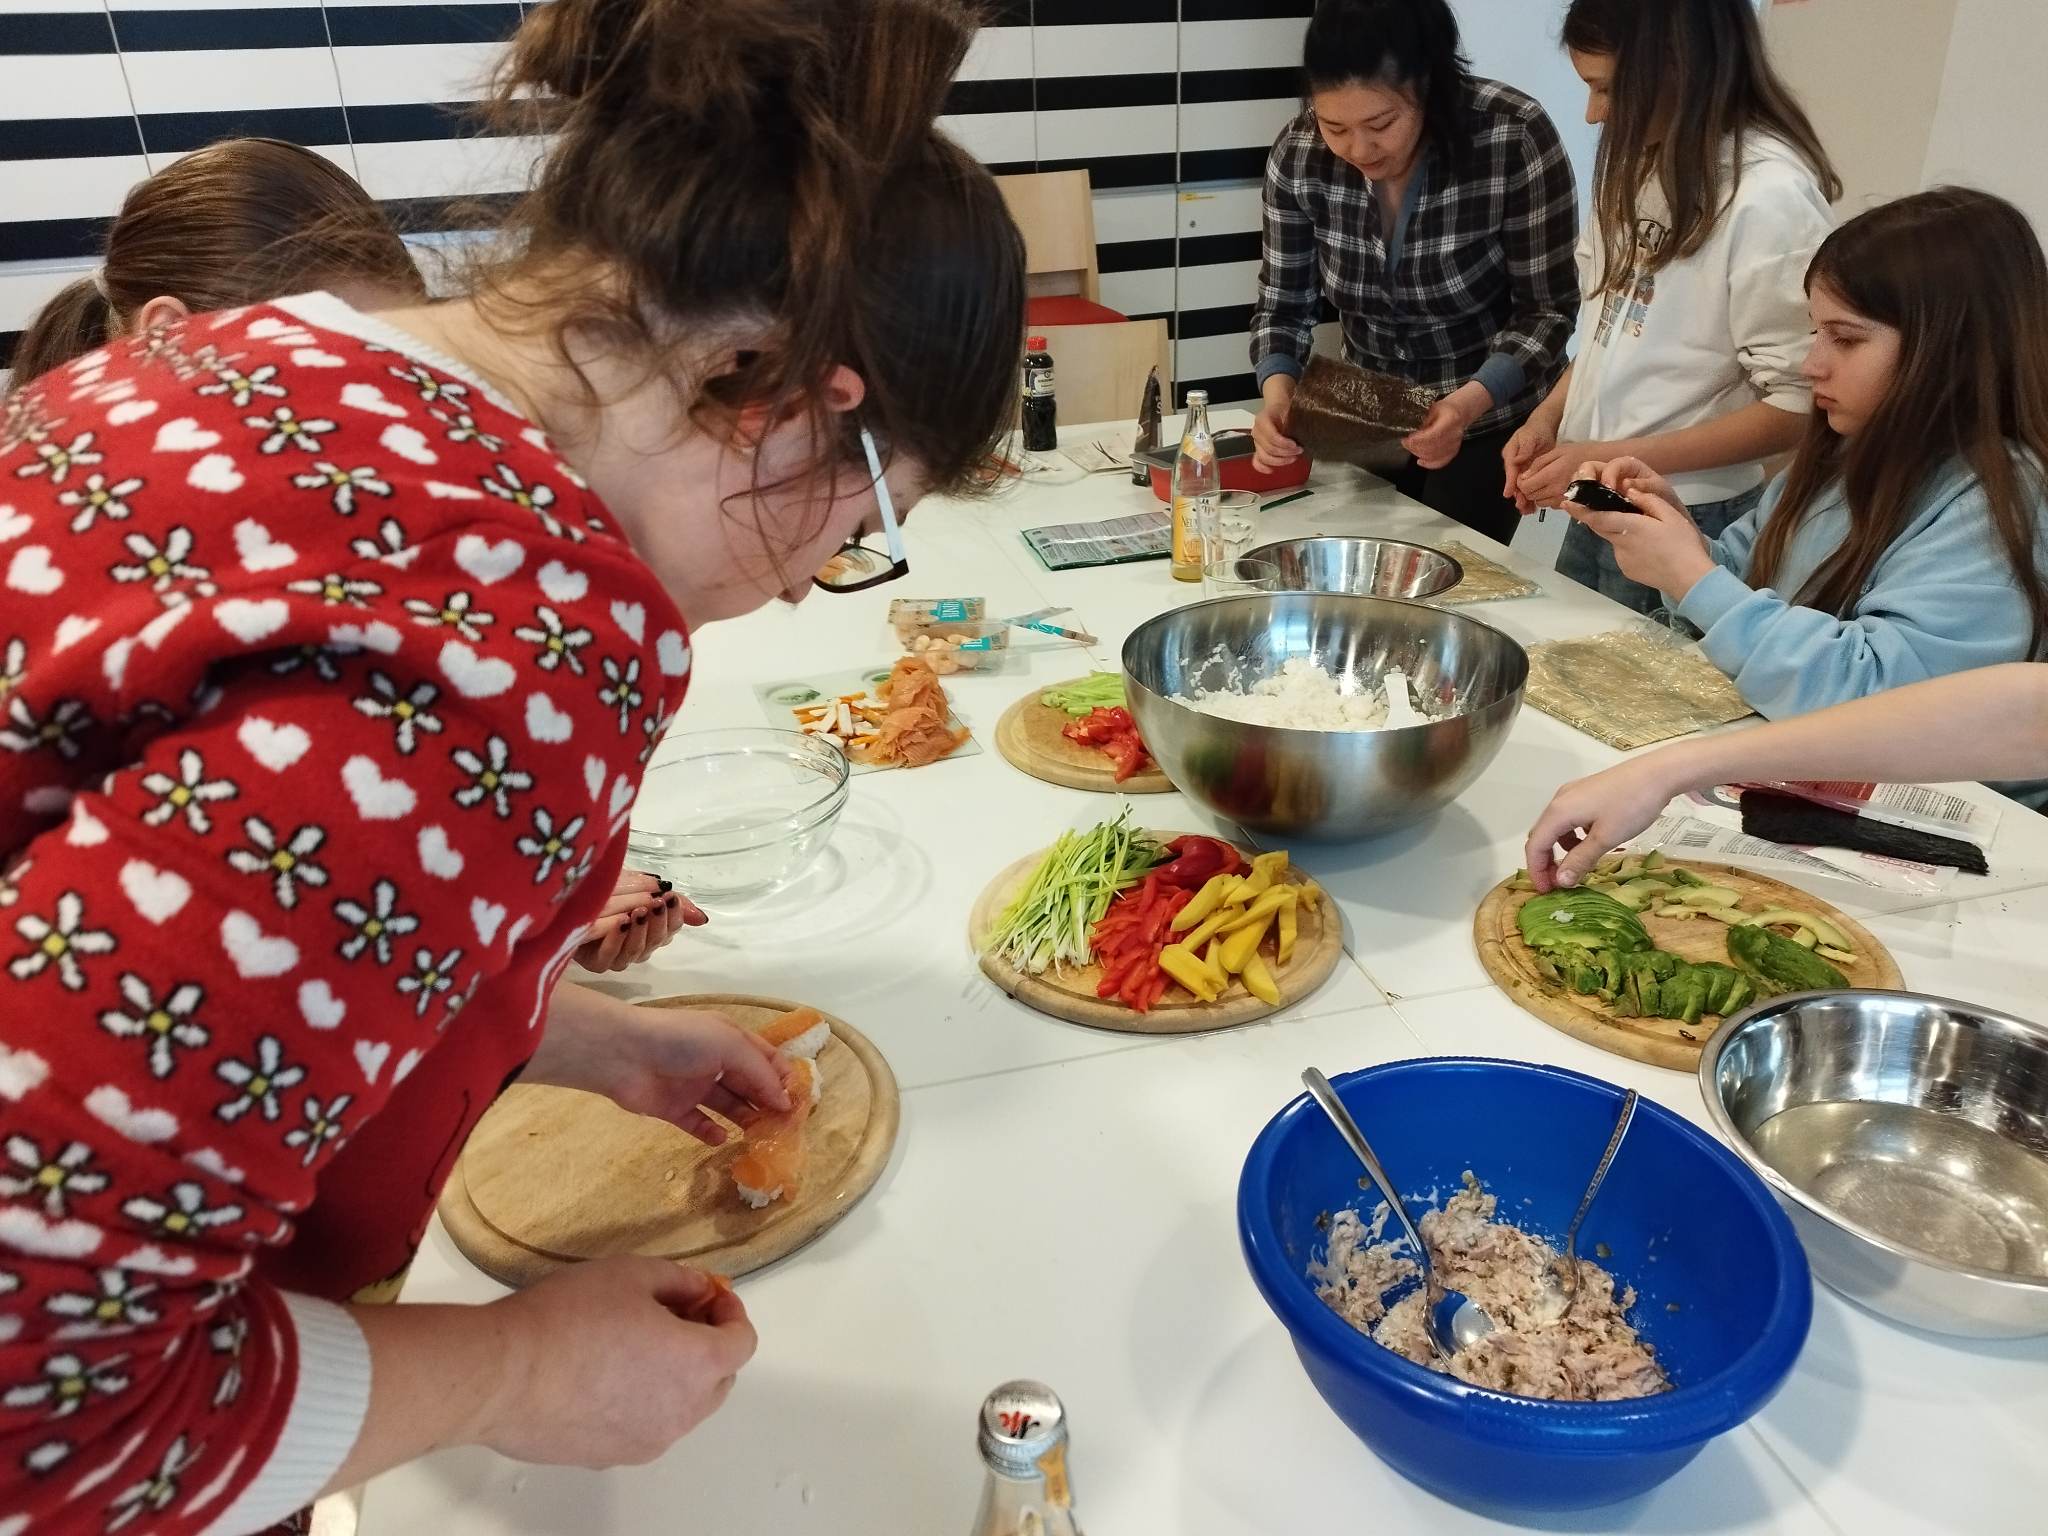 Jugendliche tauchen in die Welt des Sushi ein – Internationales Kochen bringt Kulturen zusammen